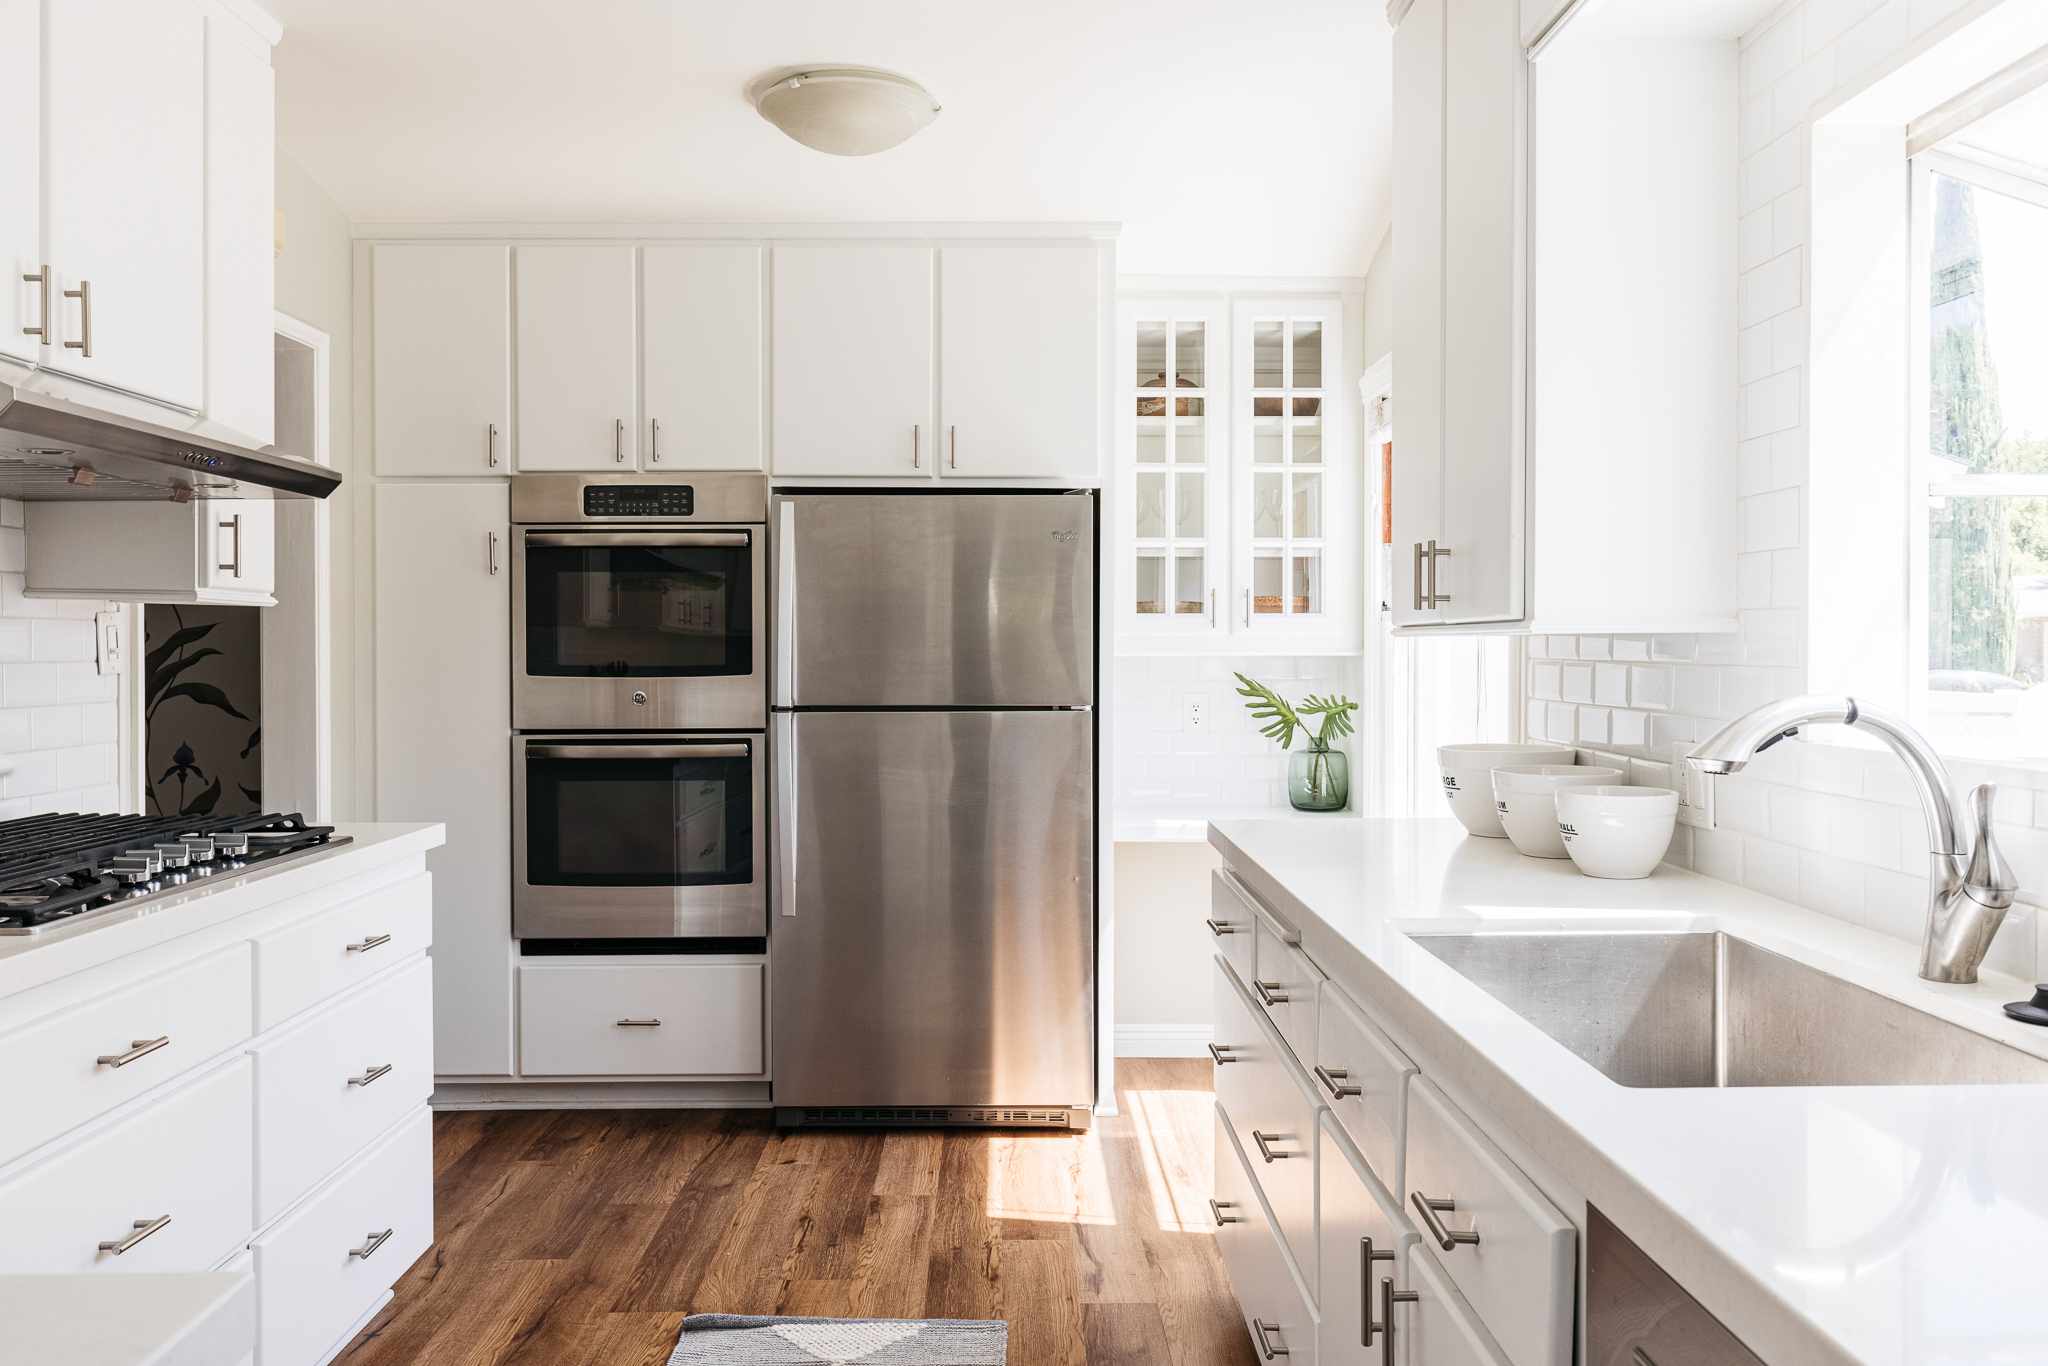 Why do quartz kitchen countertops make better choice over granite?